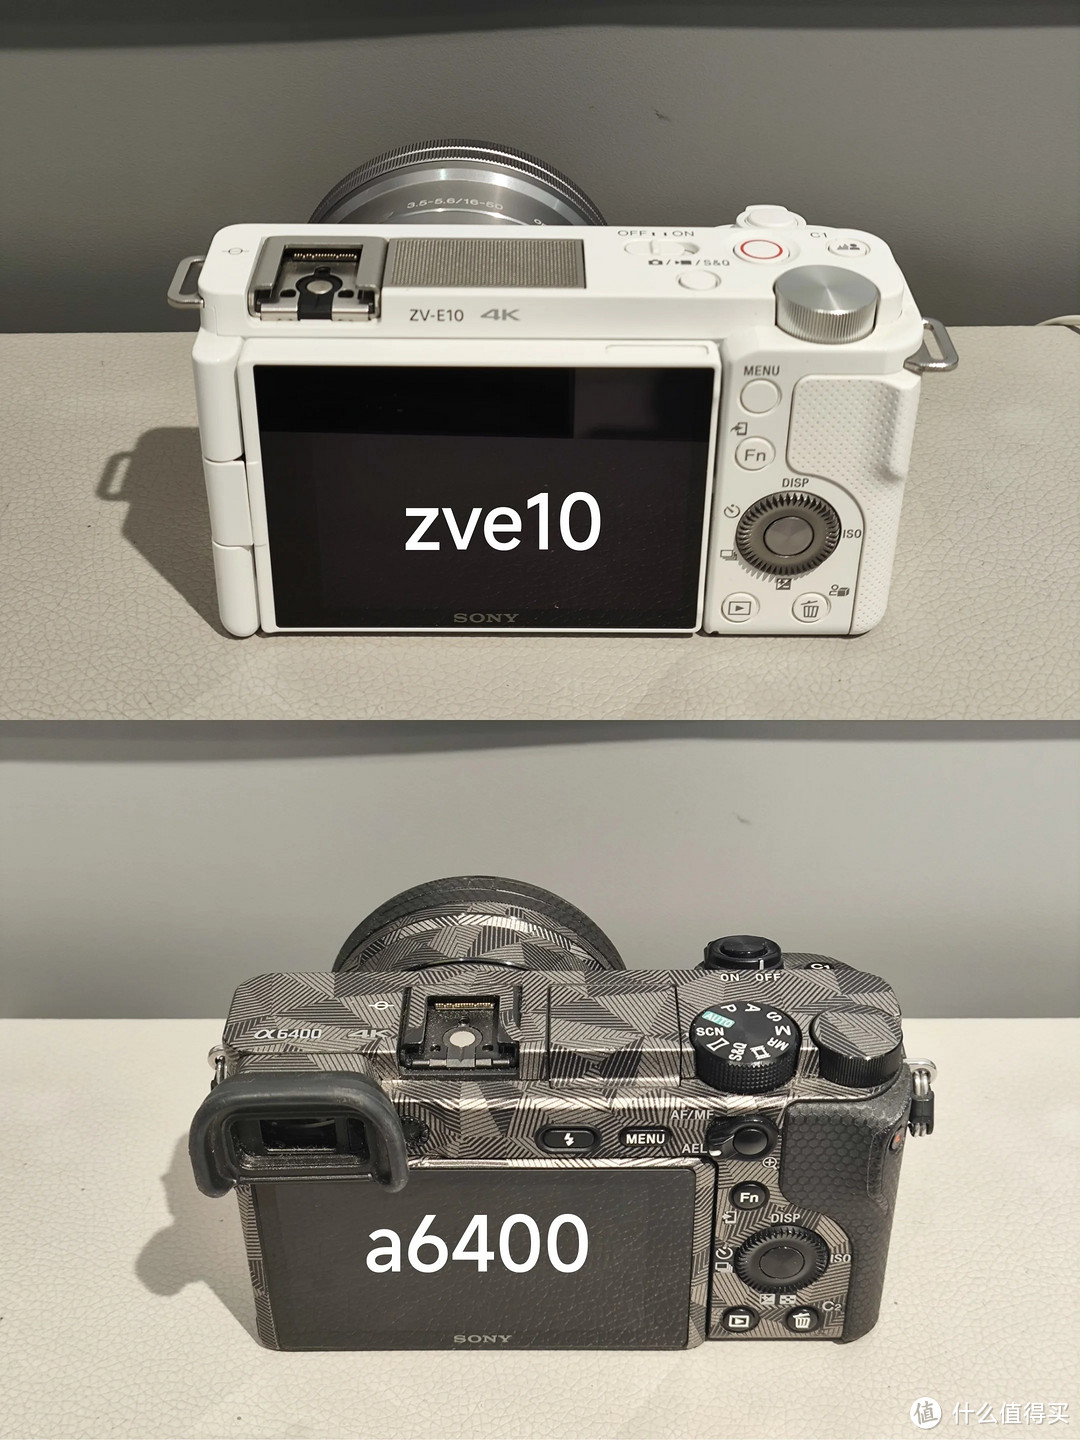 特别是A6400和ZVE10这两款相机